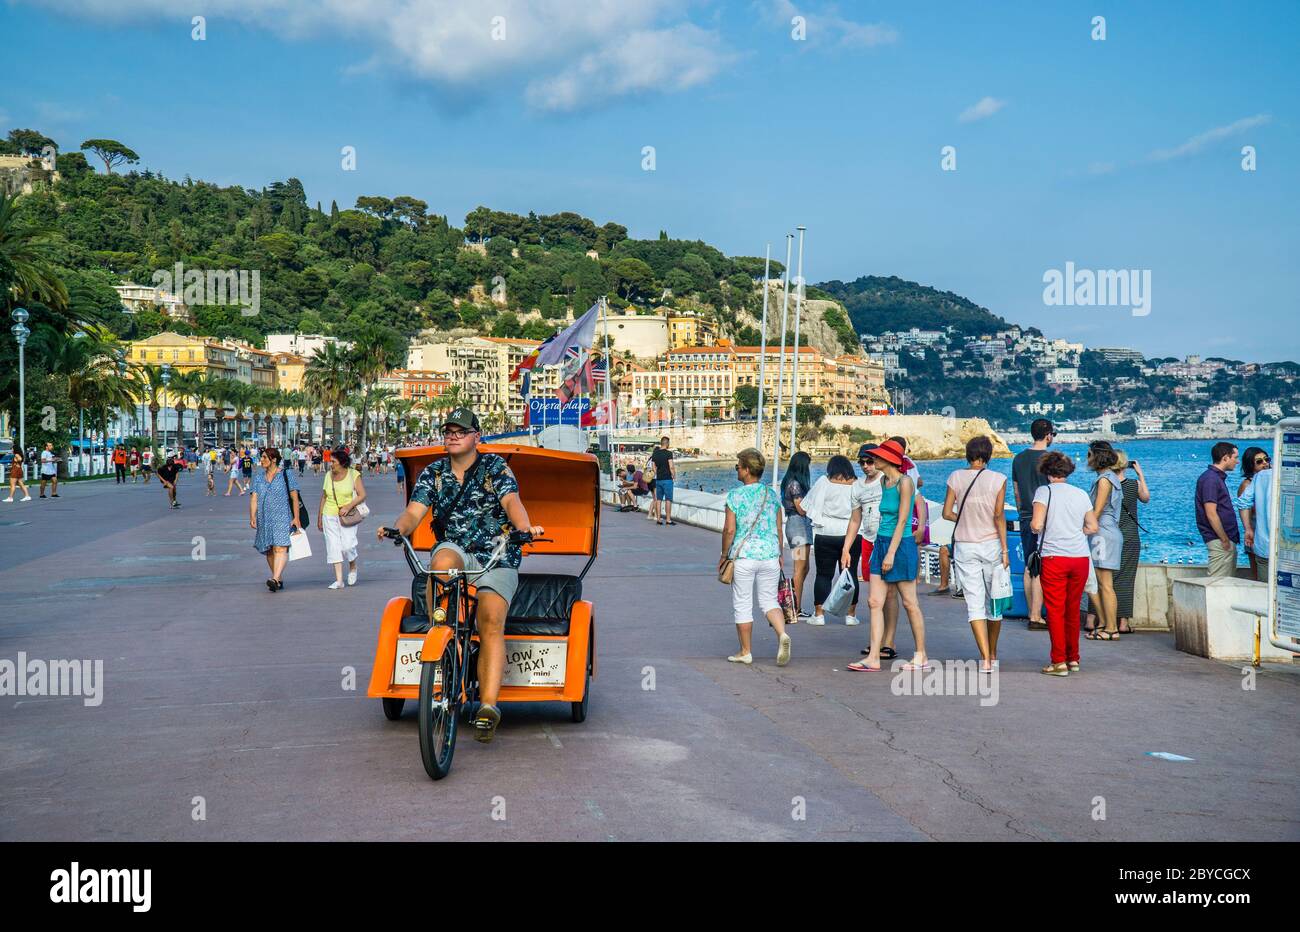 Pedilab sur la promenade de l'Opéra Beach, sur le front de mer de Nice, Côte d'Azur, Provence-Alpes-Côte d'Azur, France Banque D'Images